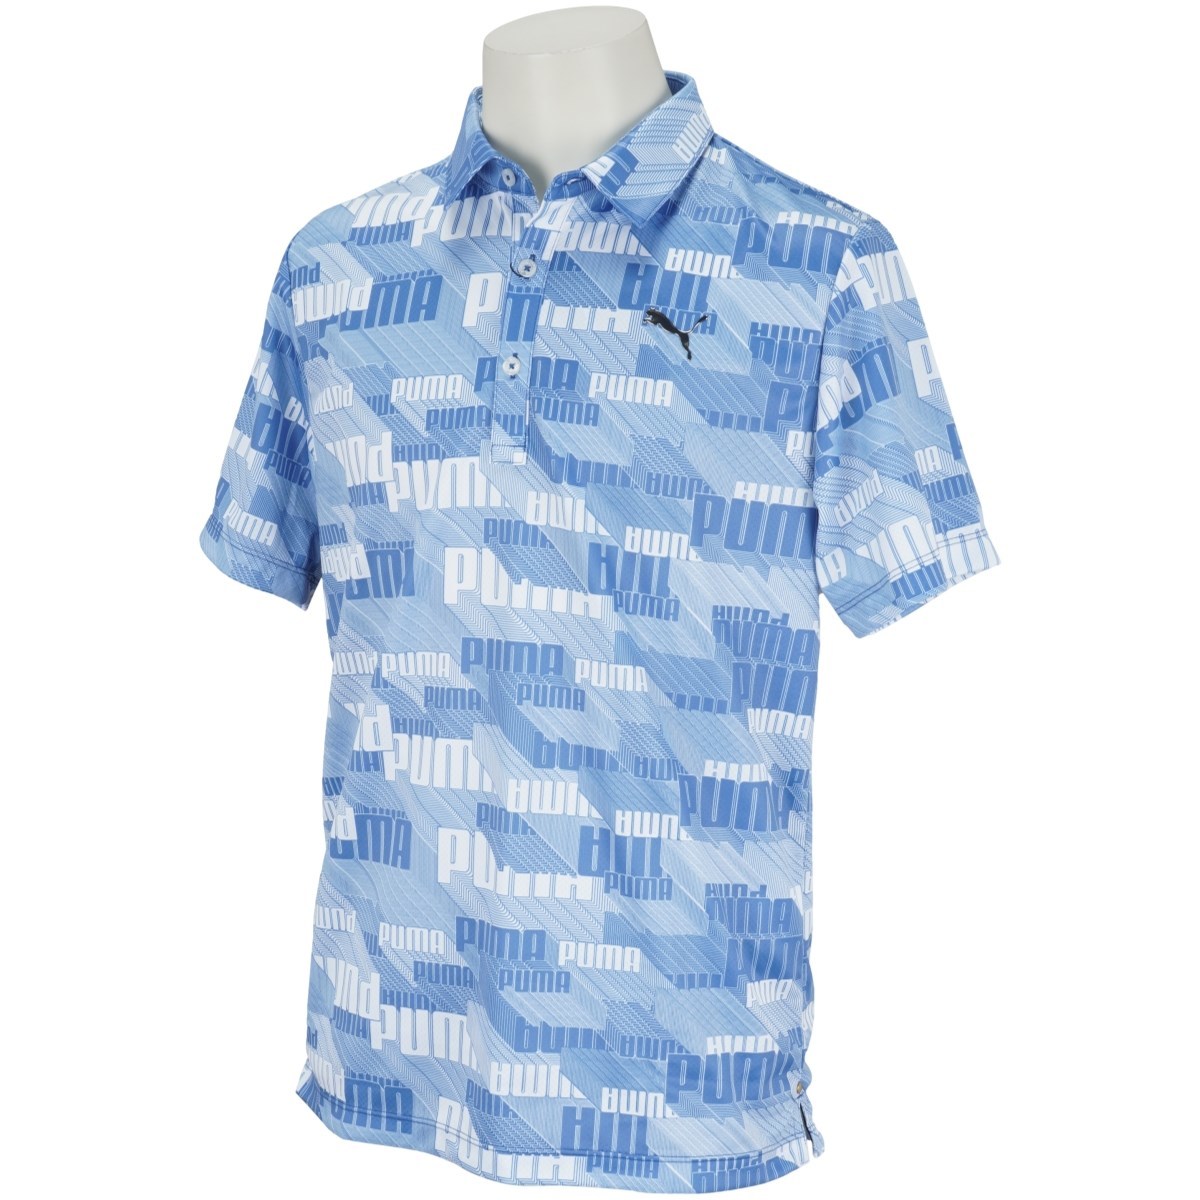  бесплатная доставка * новый товар * Puma Golf 3D графика рубашка-поло с коротким рукавом *(S)*930522-03*PUMA GOLF